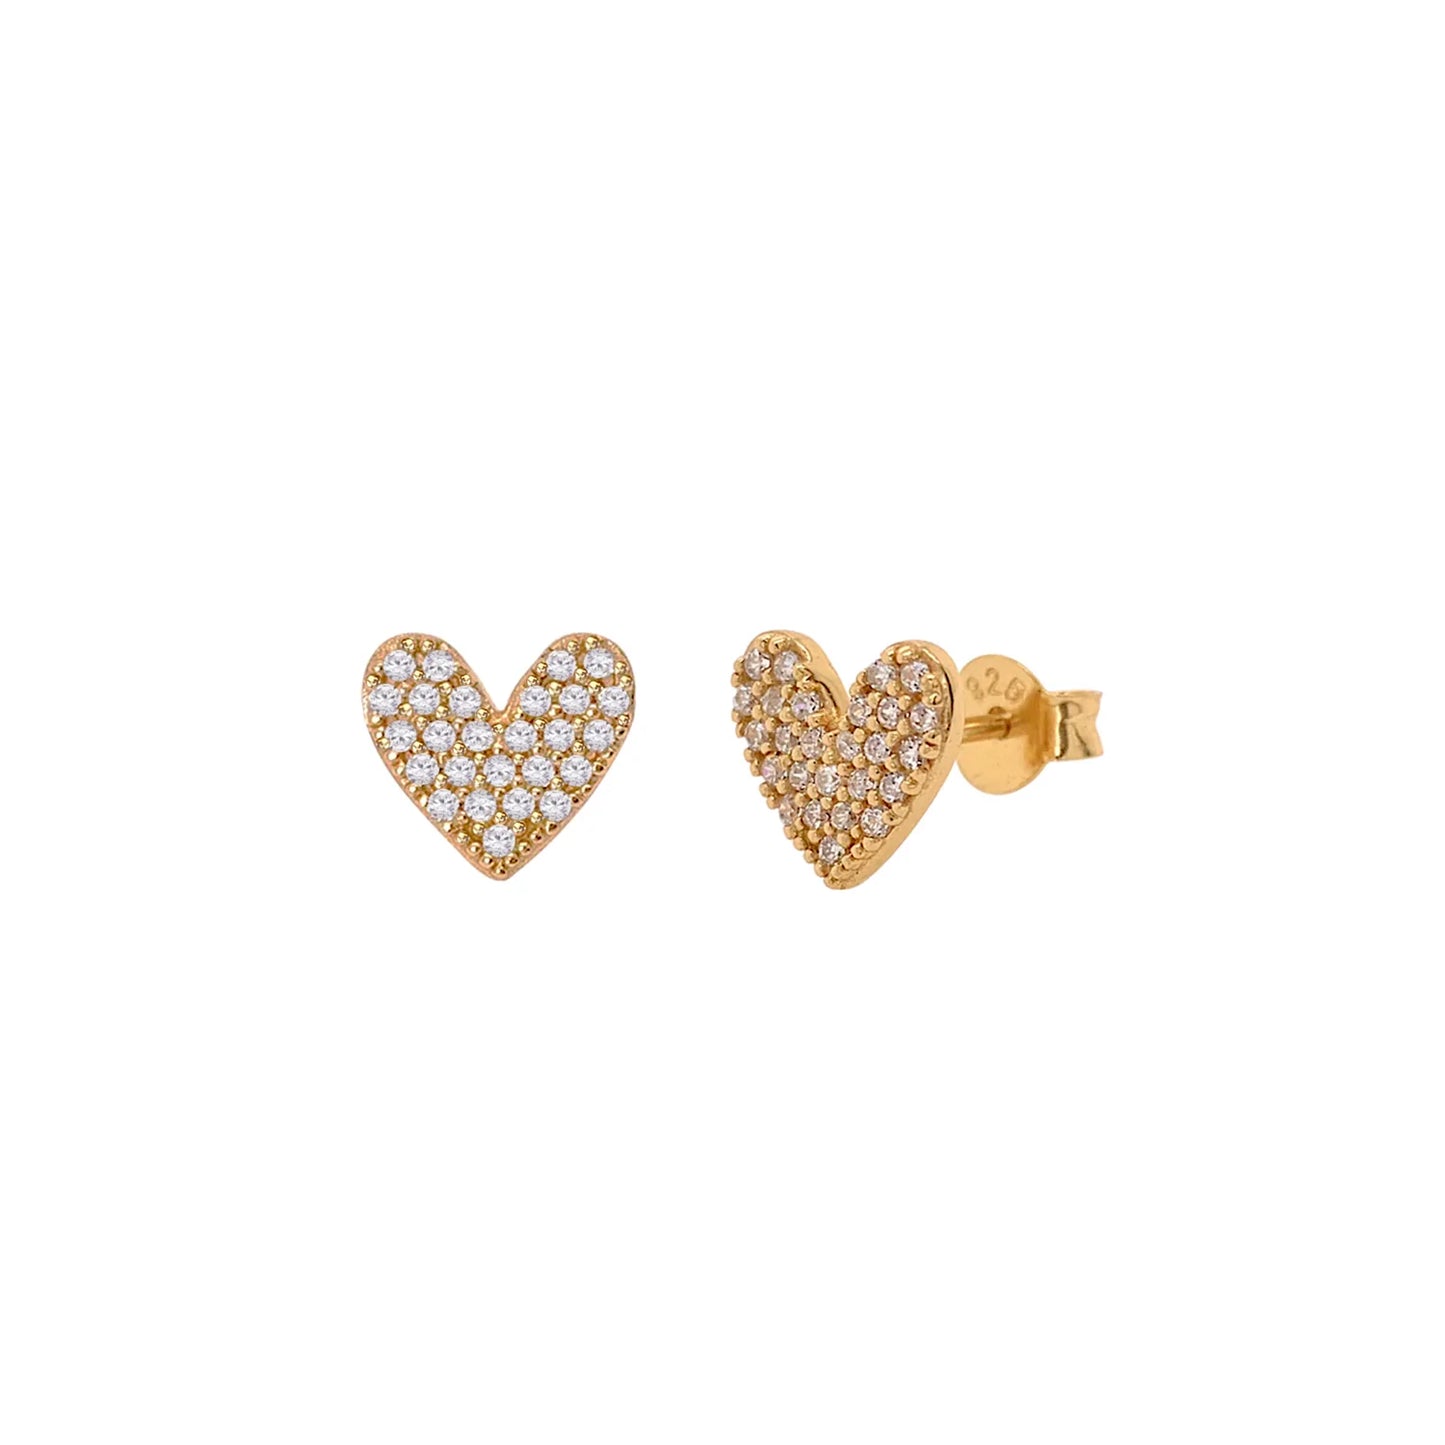 Luxe Pave Heart Stud Earrings